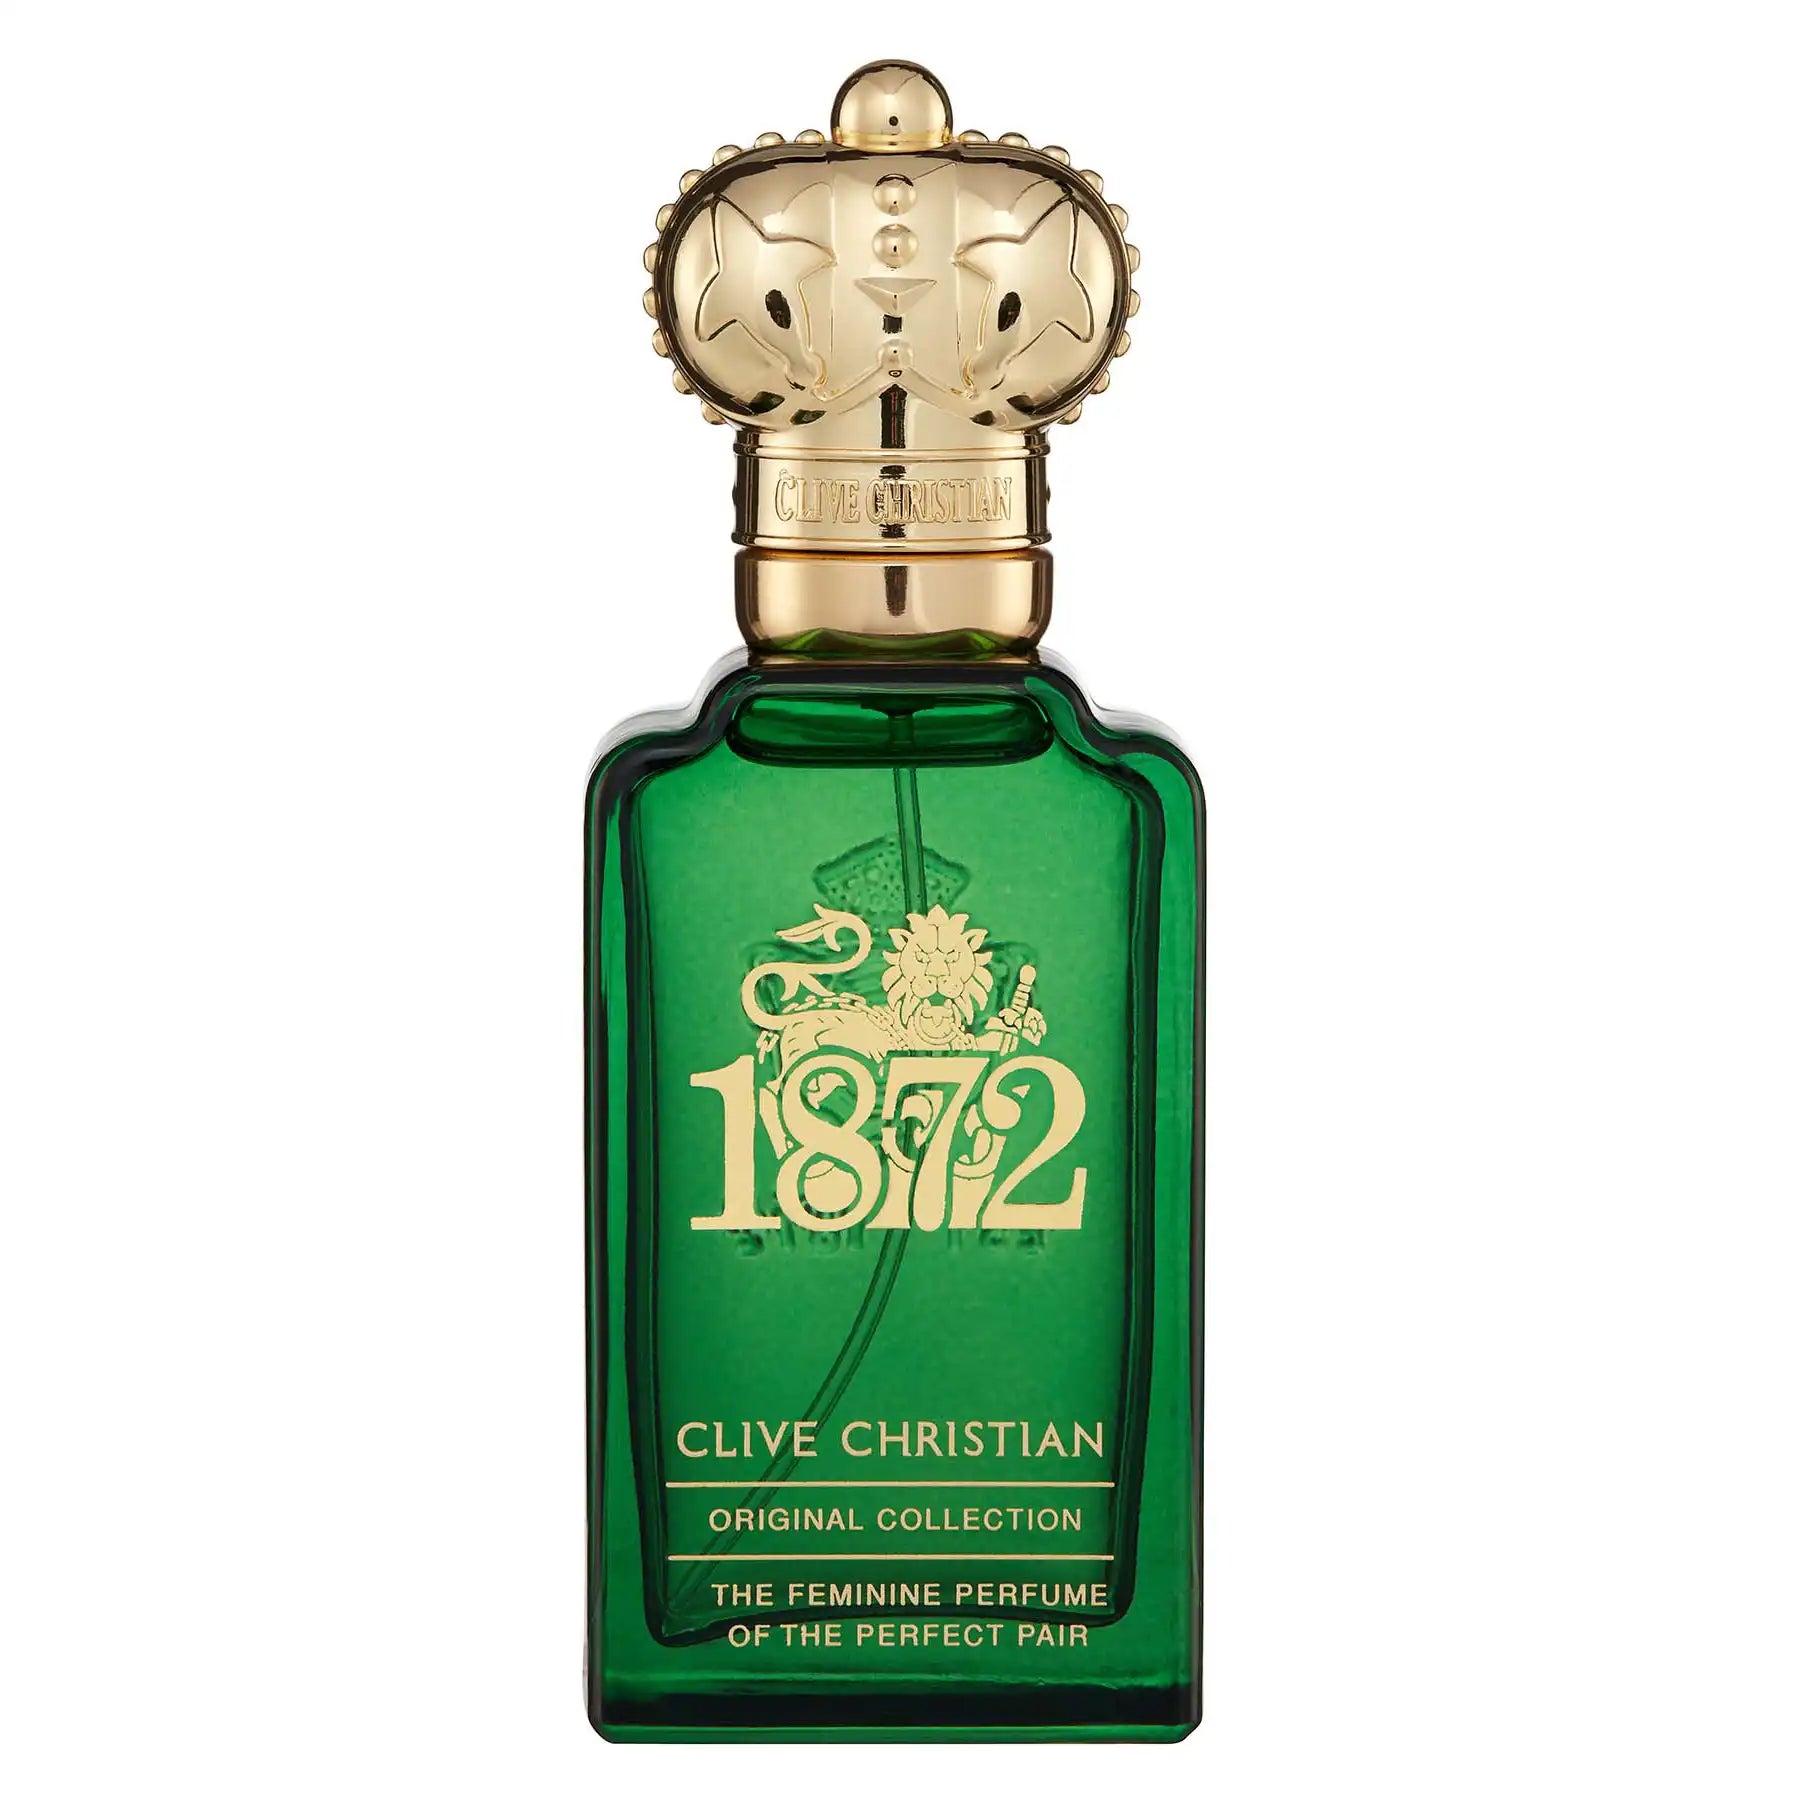 Clive Christian 1872 Feminine Edition Eau de Parfum 50ml